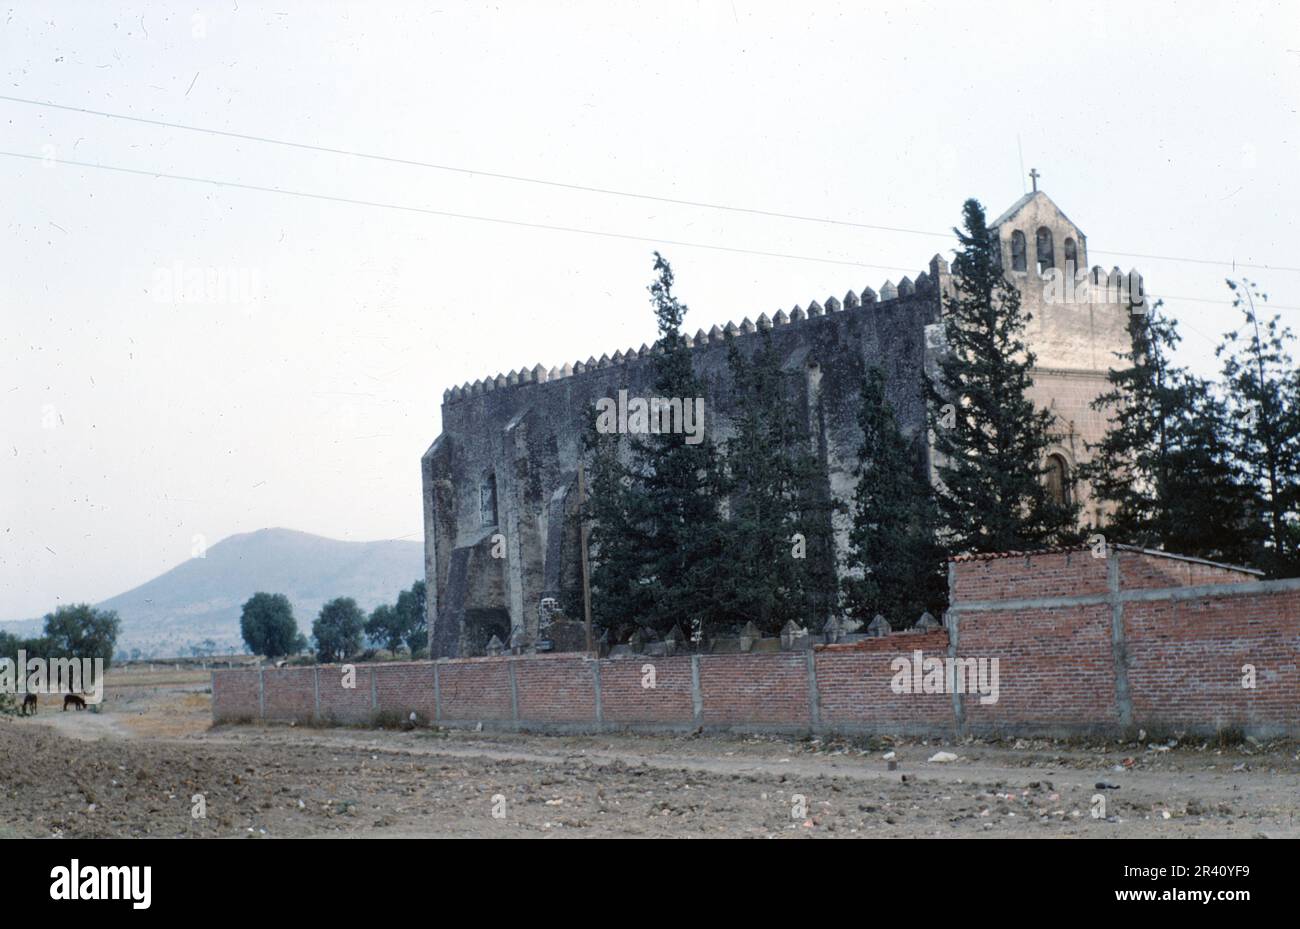 Acolman, Mexique- avril 1970: Vue de l'ancien couvent de San Agustin avant restauration, ancien couvent catholique de 16th siècles, film de diapositives vintage Banque D'Images